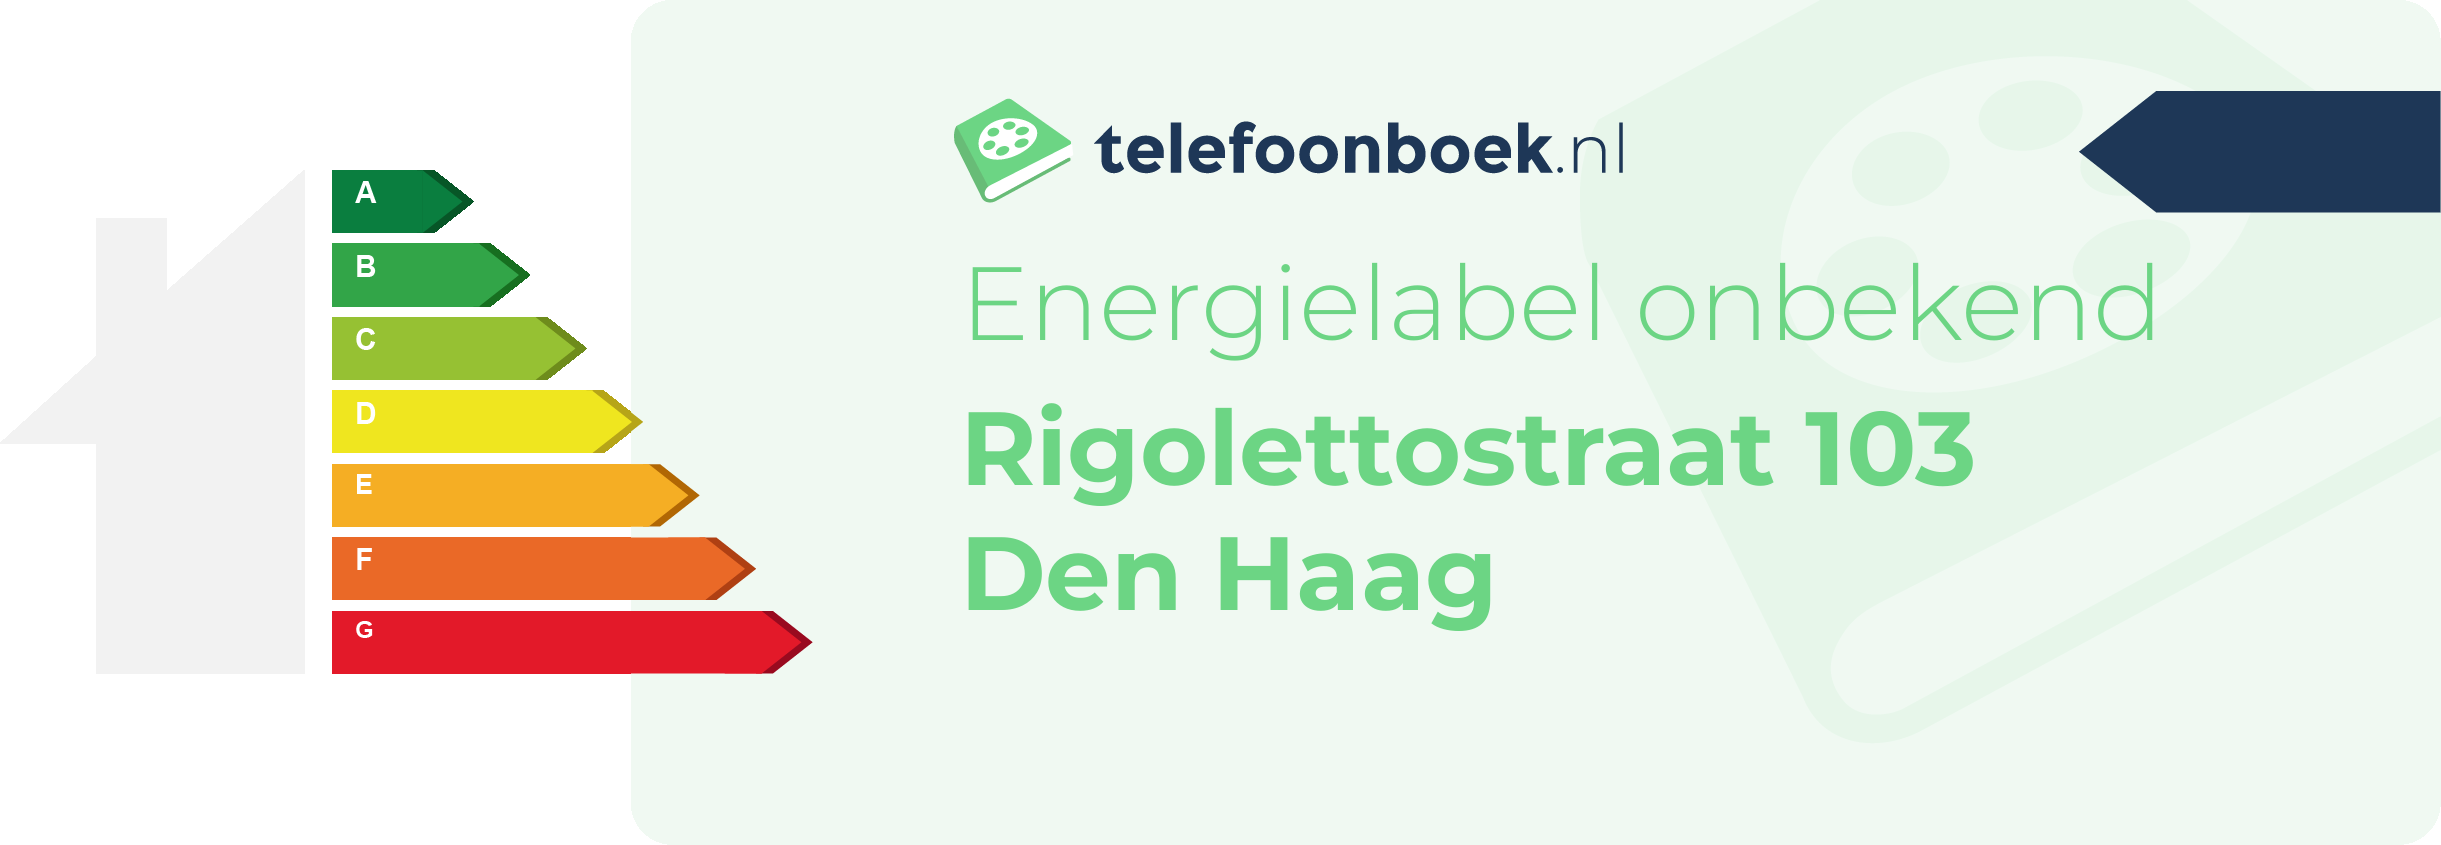 Energielabel Rigolettostraat 103 Den Haag